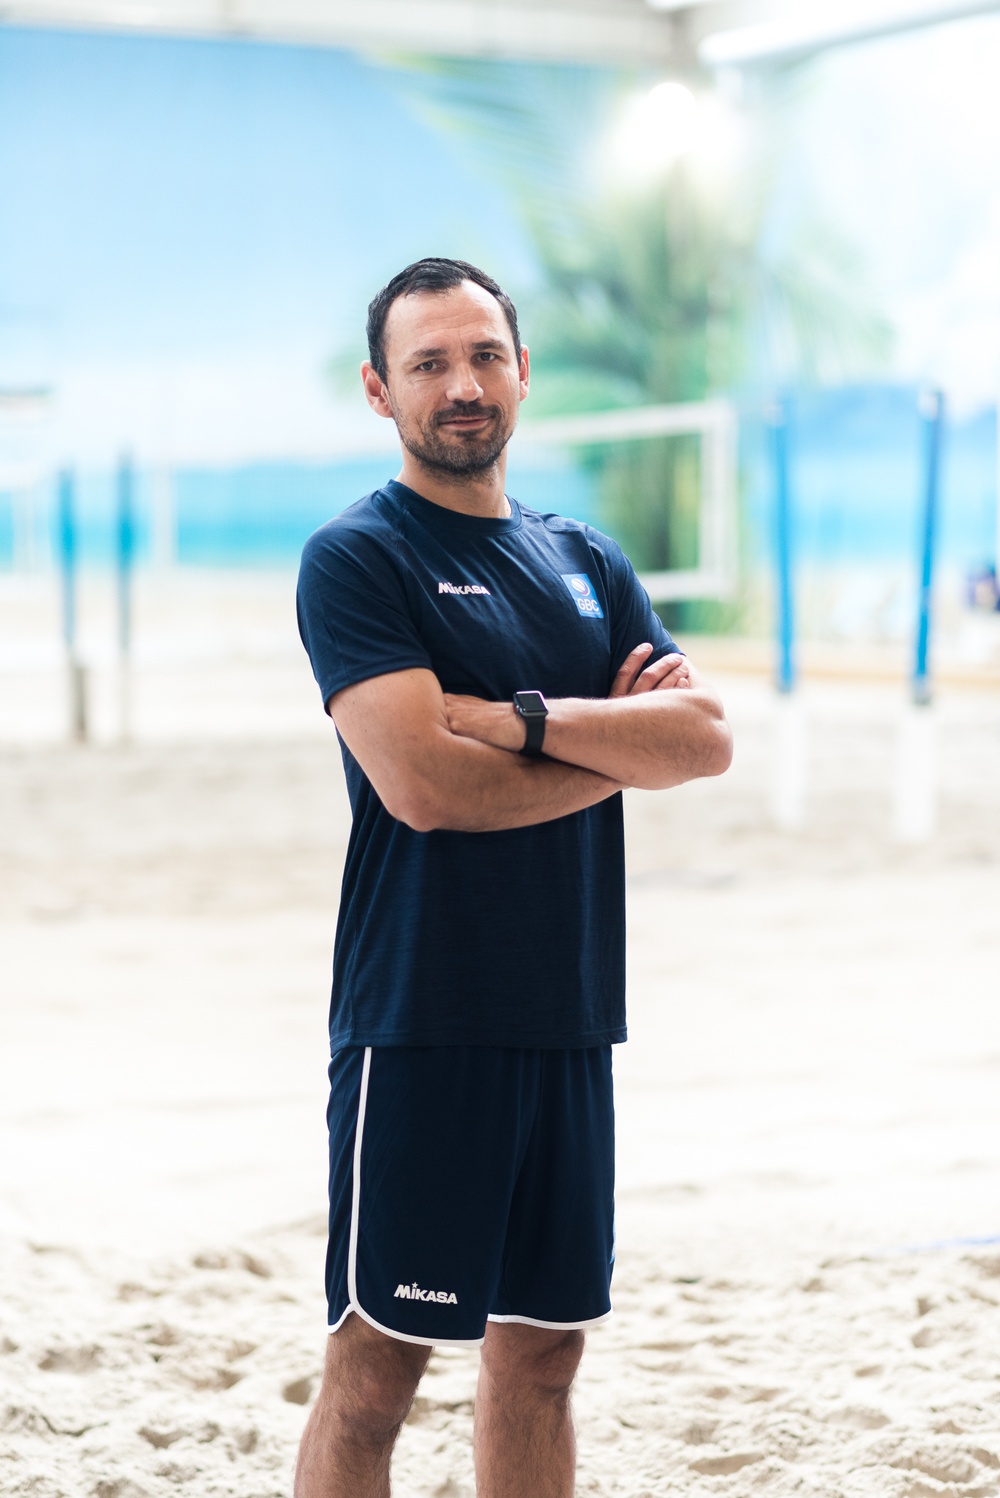 Arrangerande klubbens elittränare, Elvir Rakovic, ser fram emot helgens tävling i Beach Center.